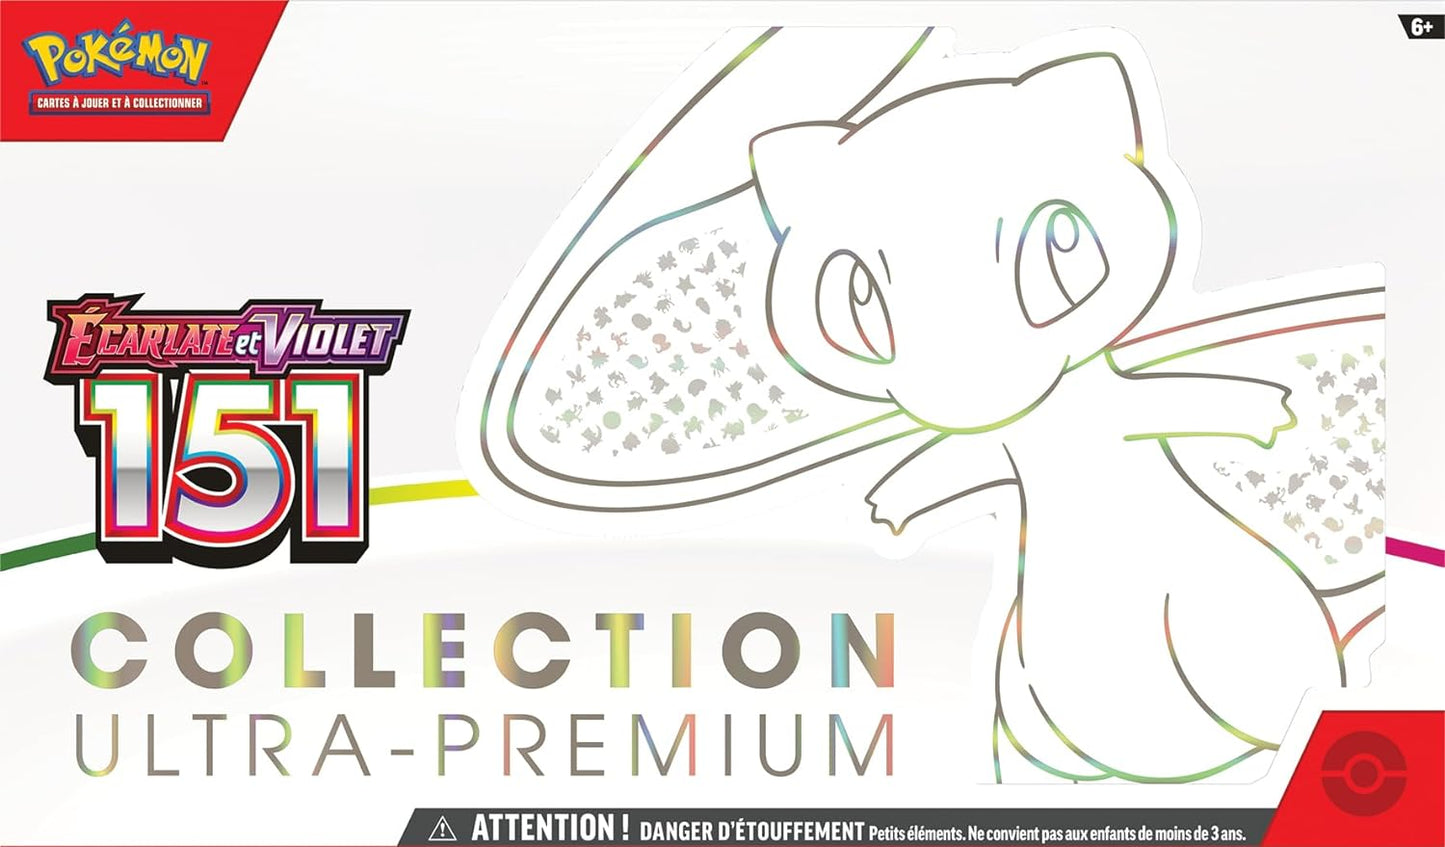 Pokémon - Coffret Collection Ultra Premium Mew - EV3.5 - Écarlate et Violet 151 - Neuf scellé